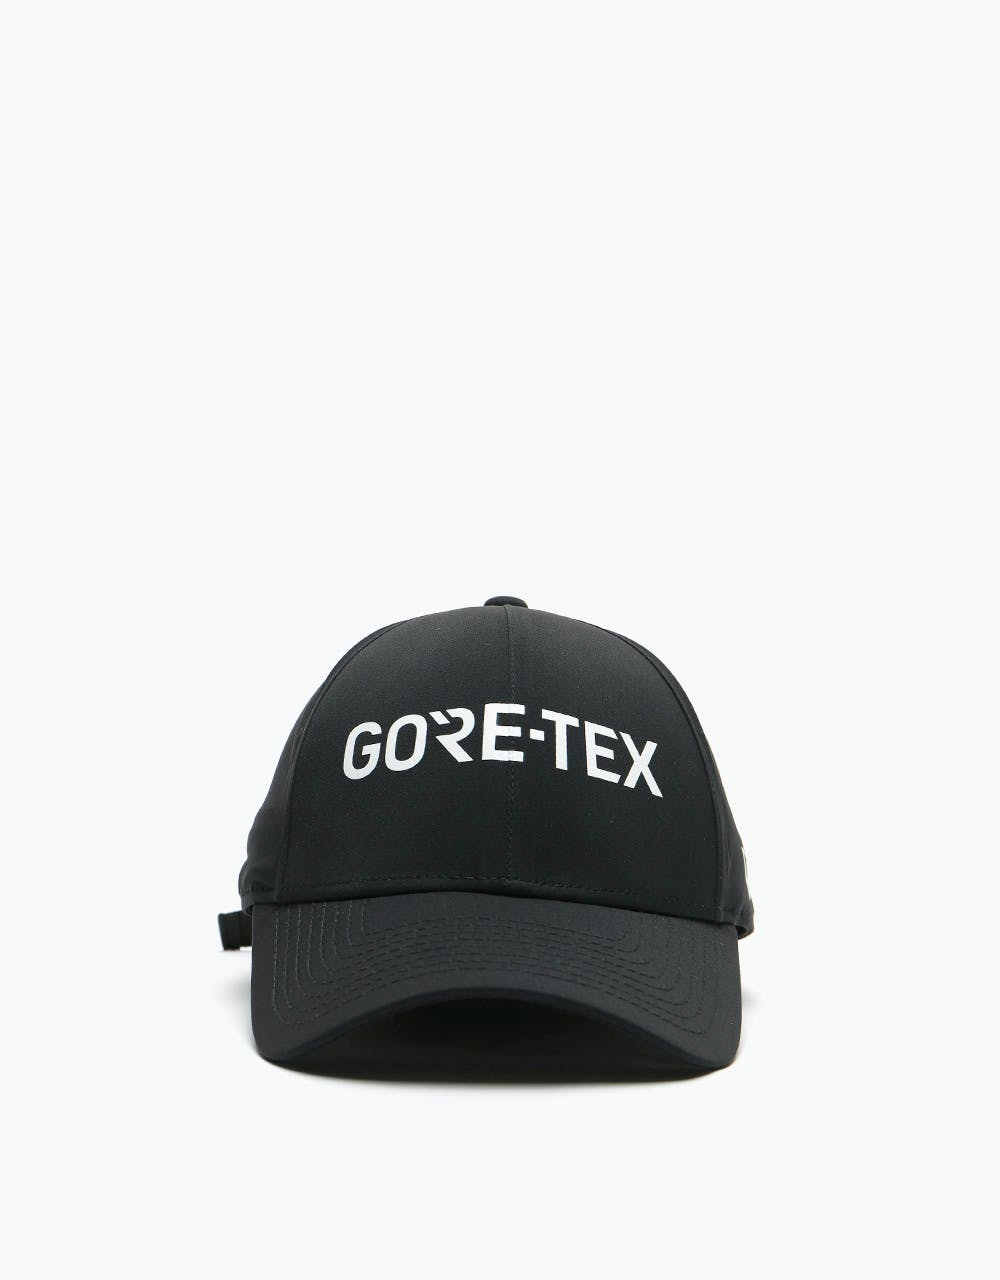 New Era 9Forty GORE-TEX Cap - Black